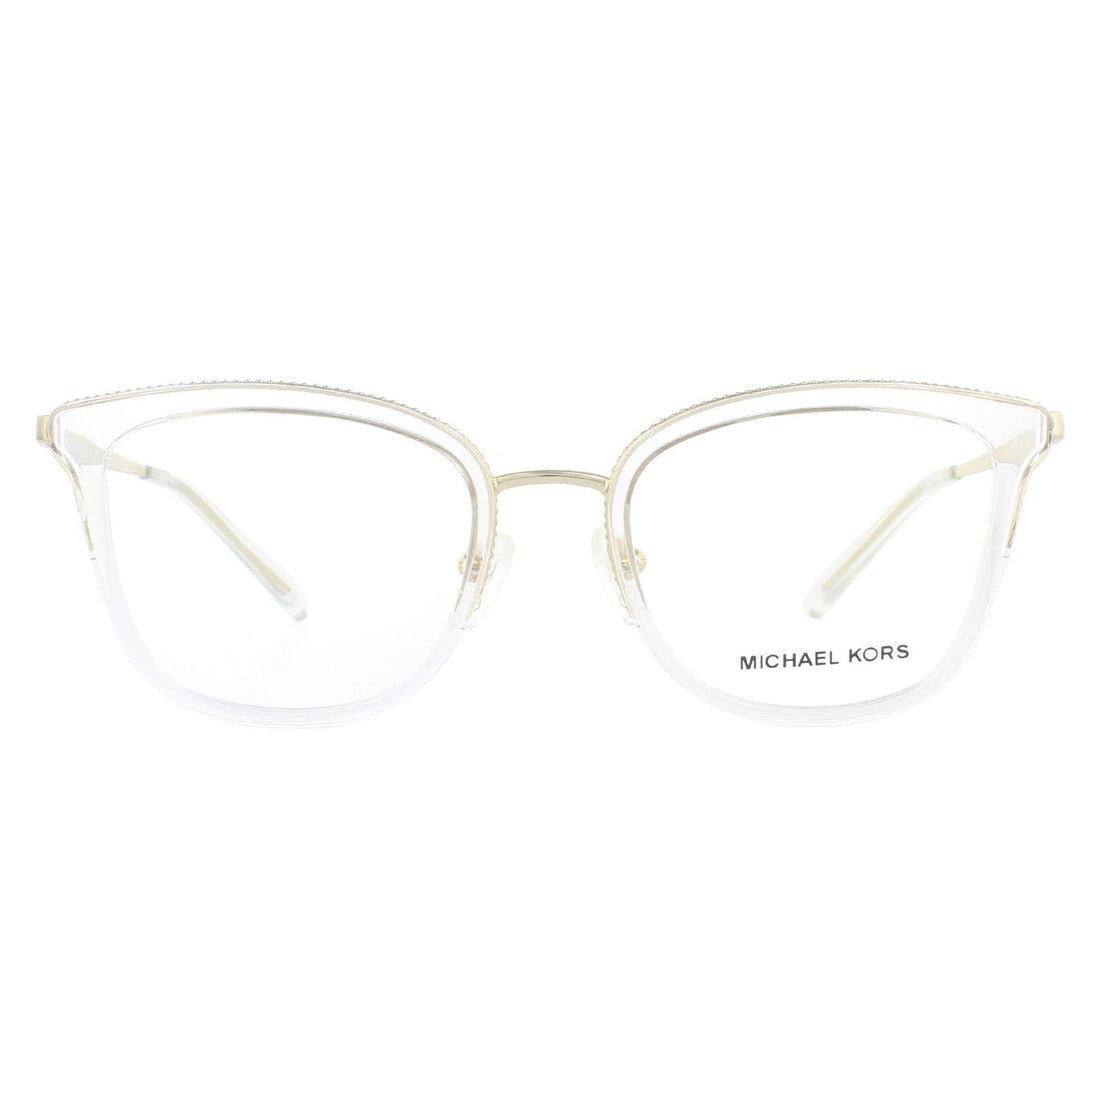 Michael Kors Coconut Grove MK3032 Glasses Frames Light Gold Clear